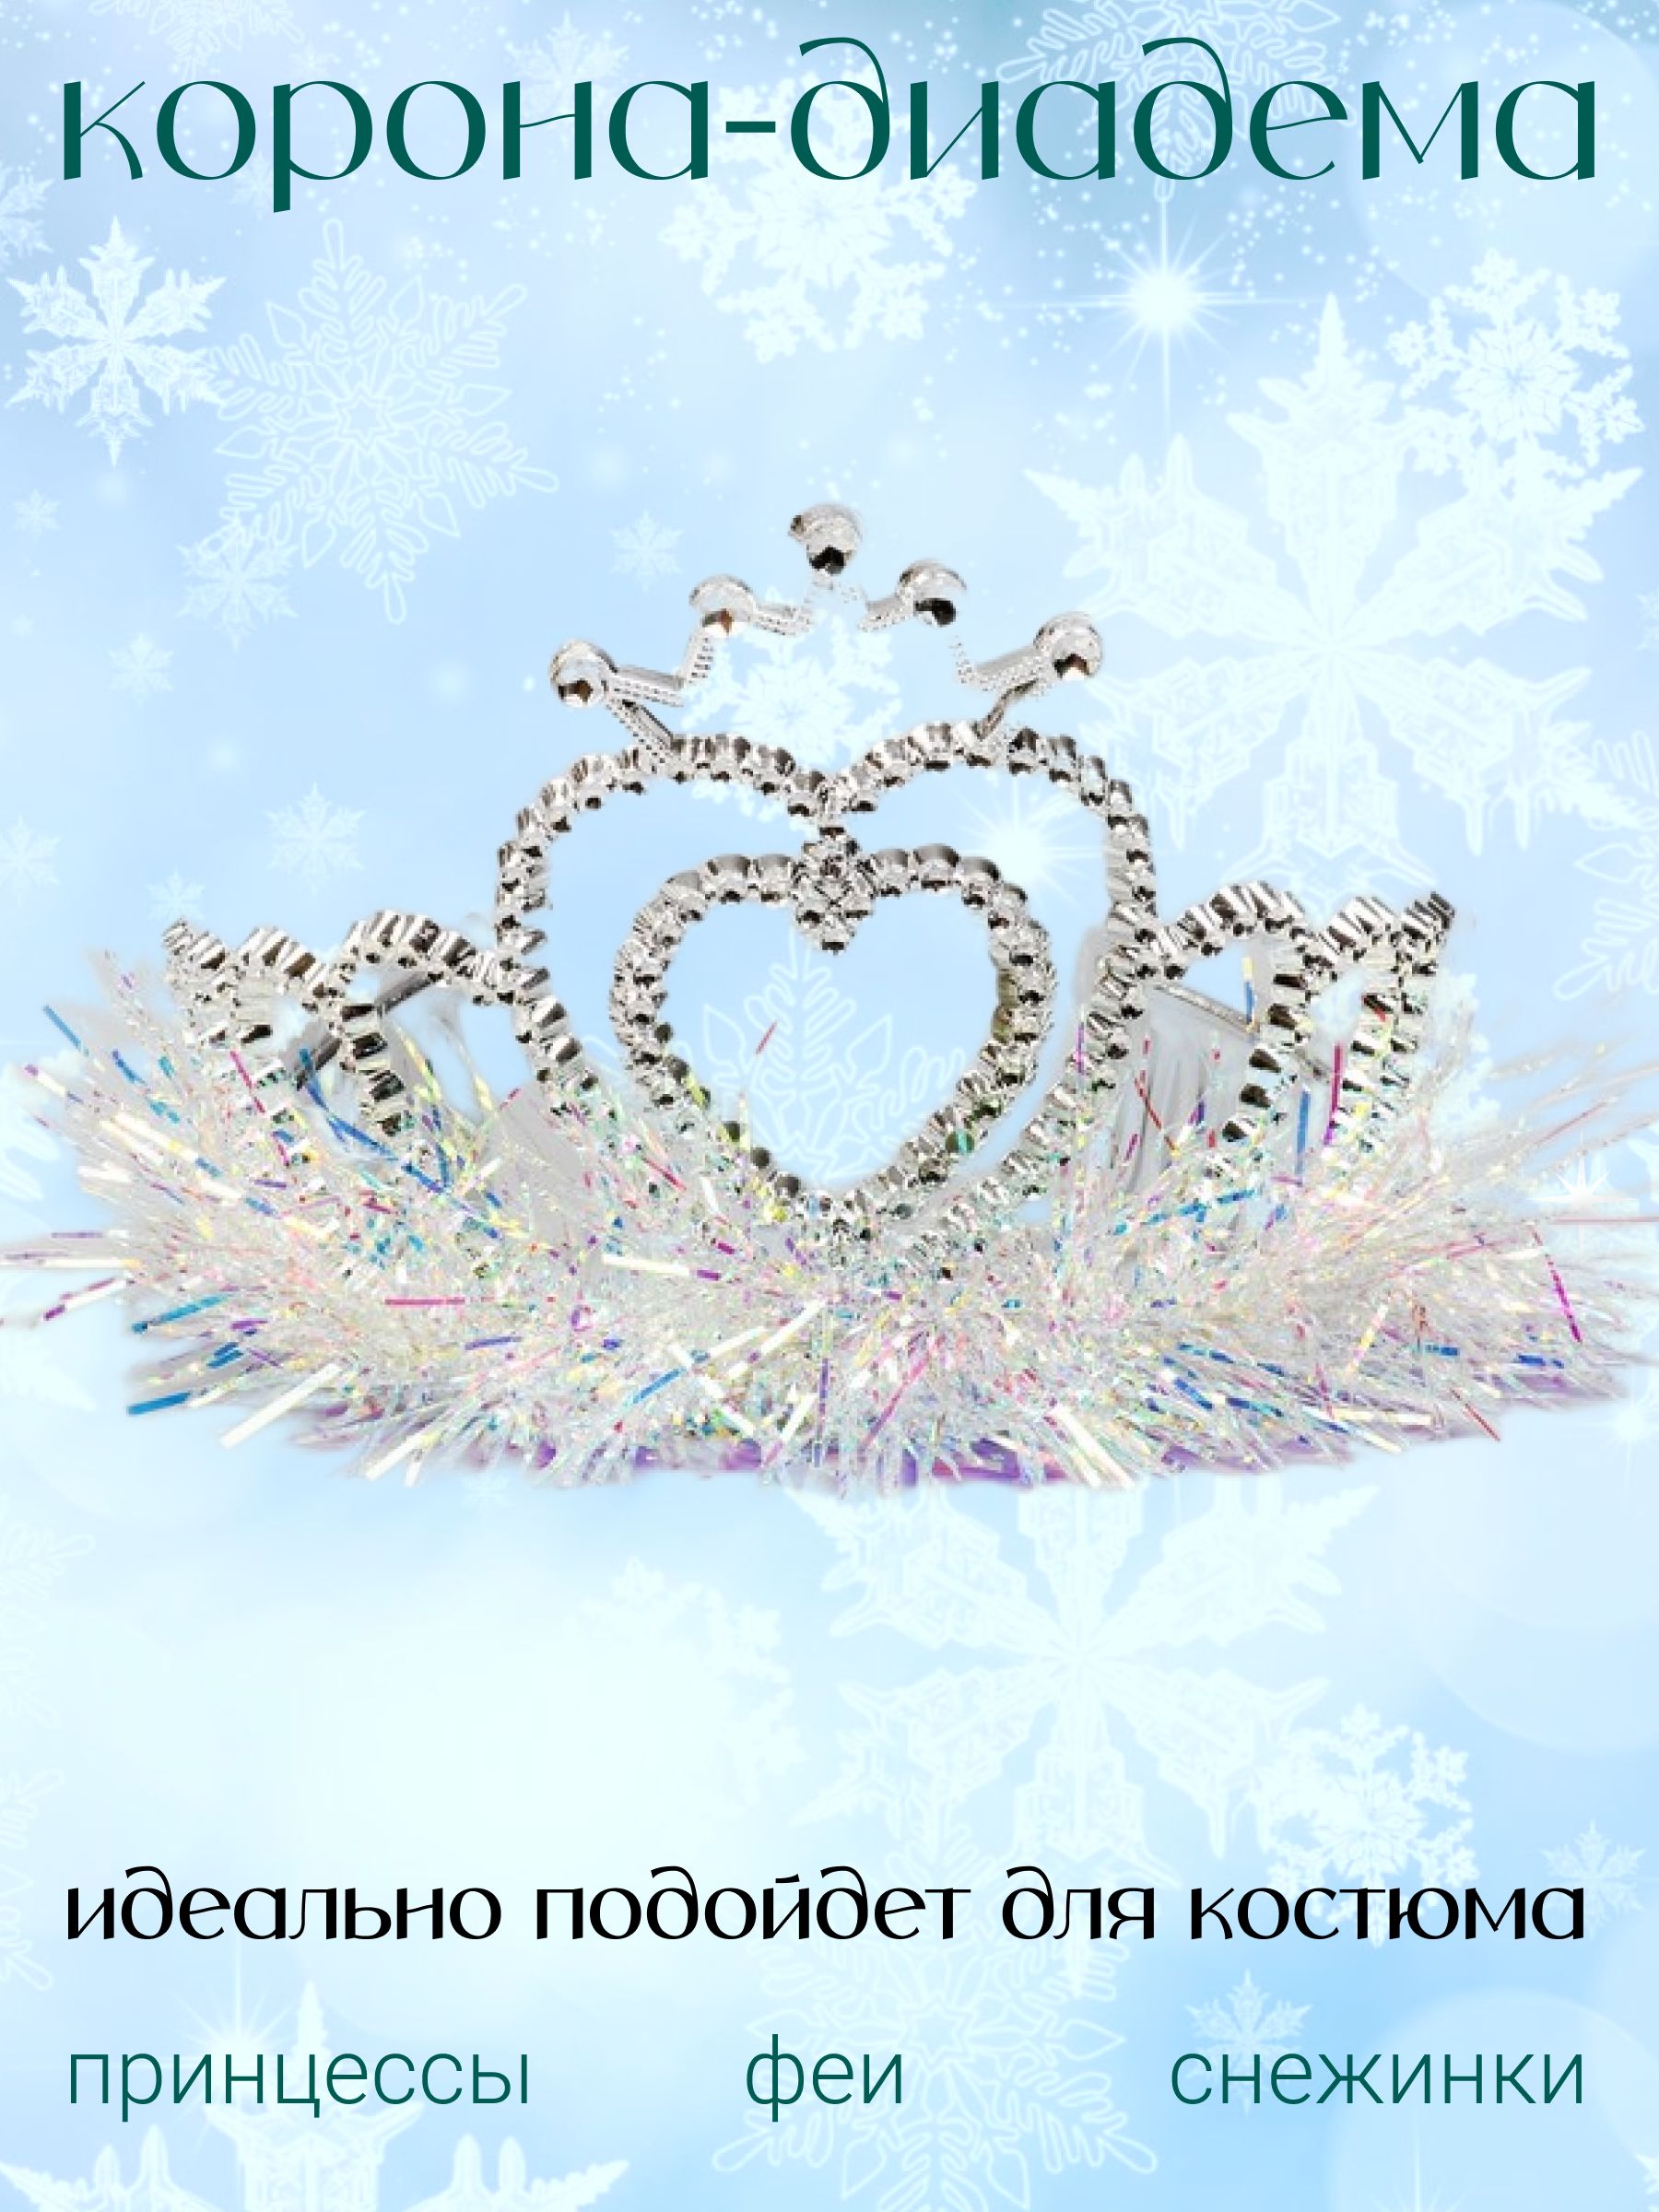 Кокошник, корона, ободок снегурочки, снежинки на Новый год